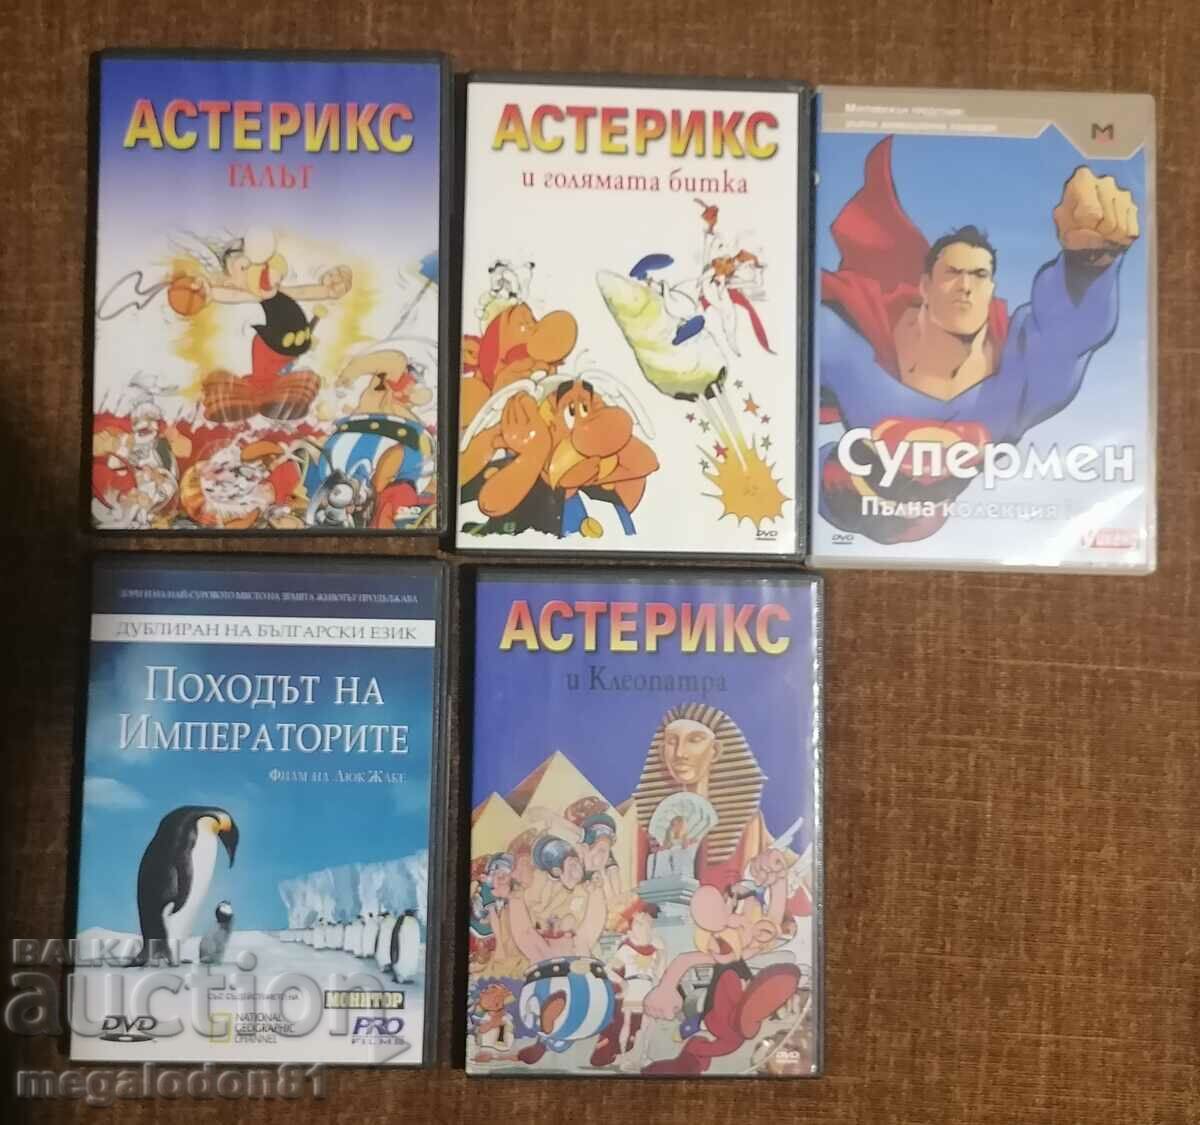 Old DVDs, children's movies